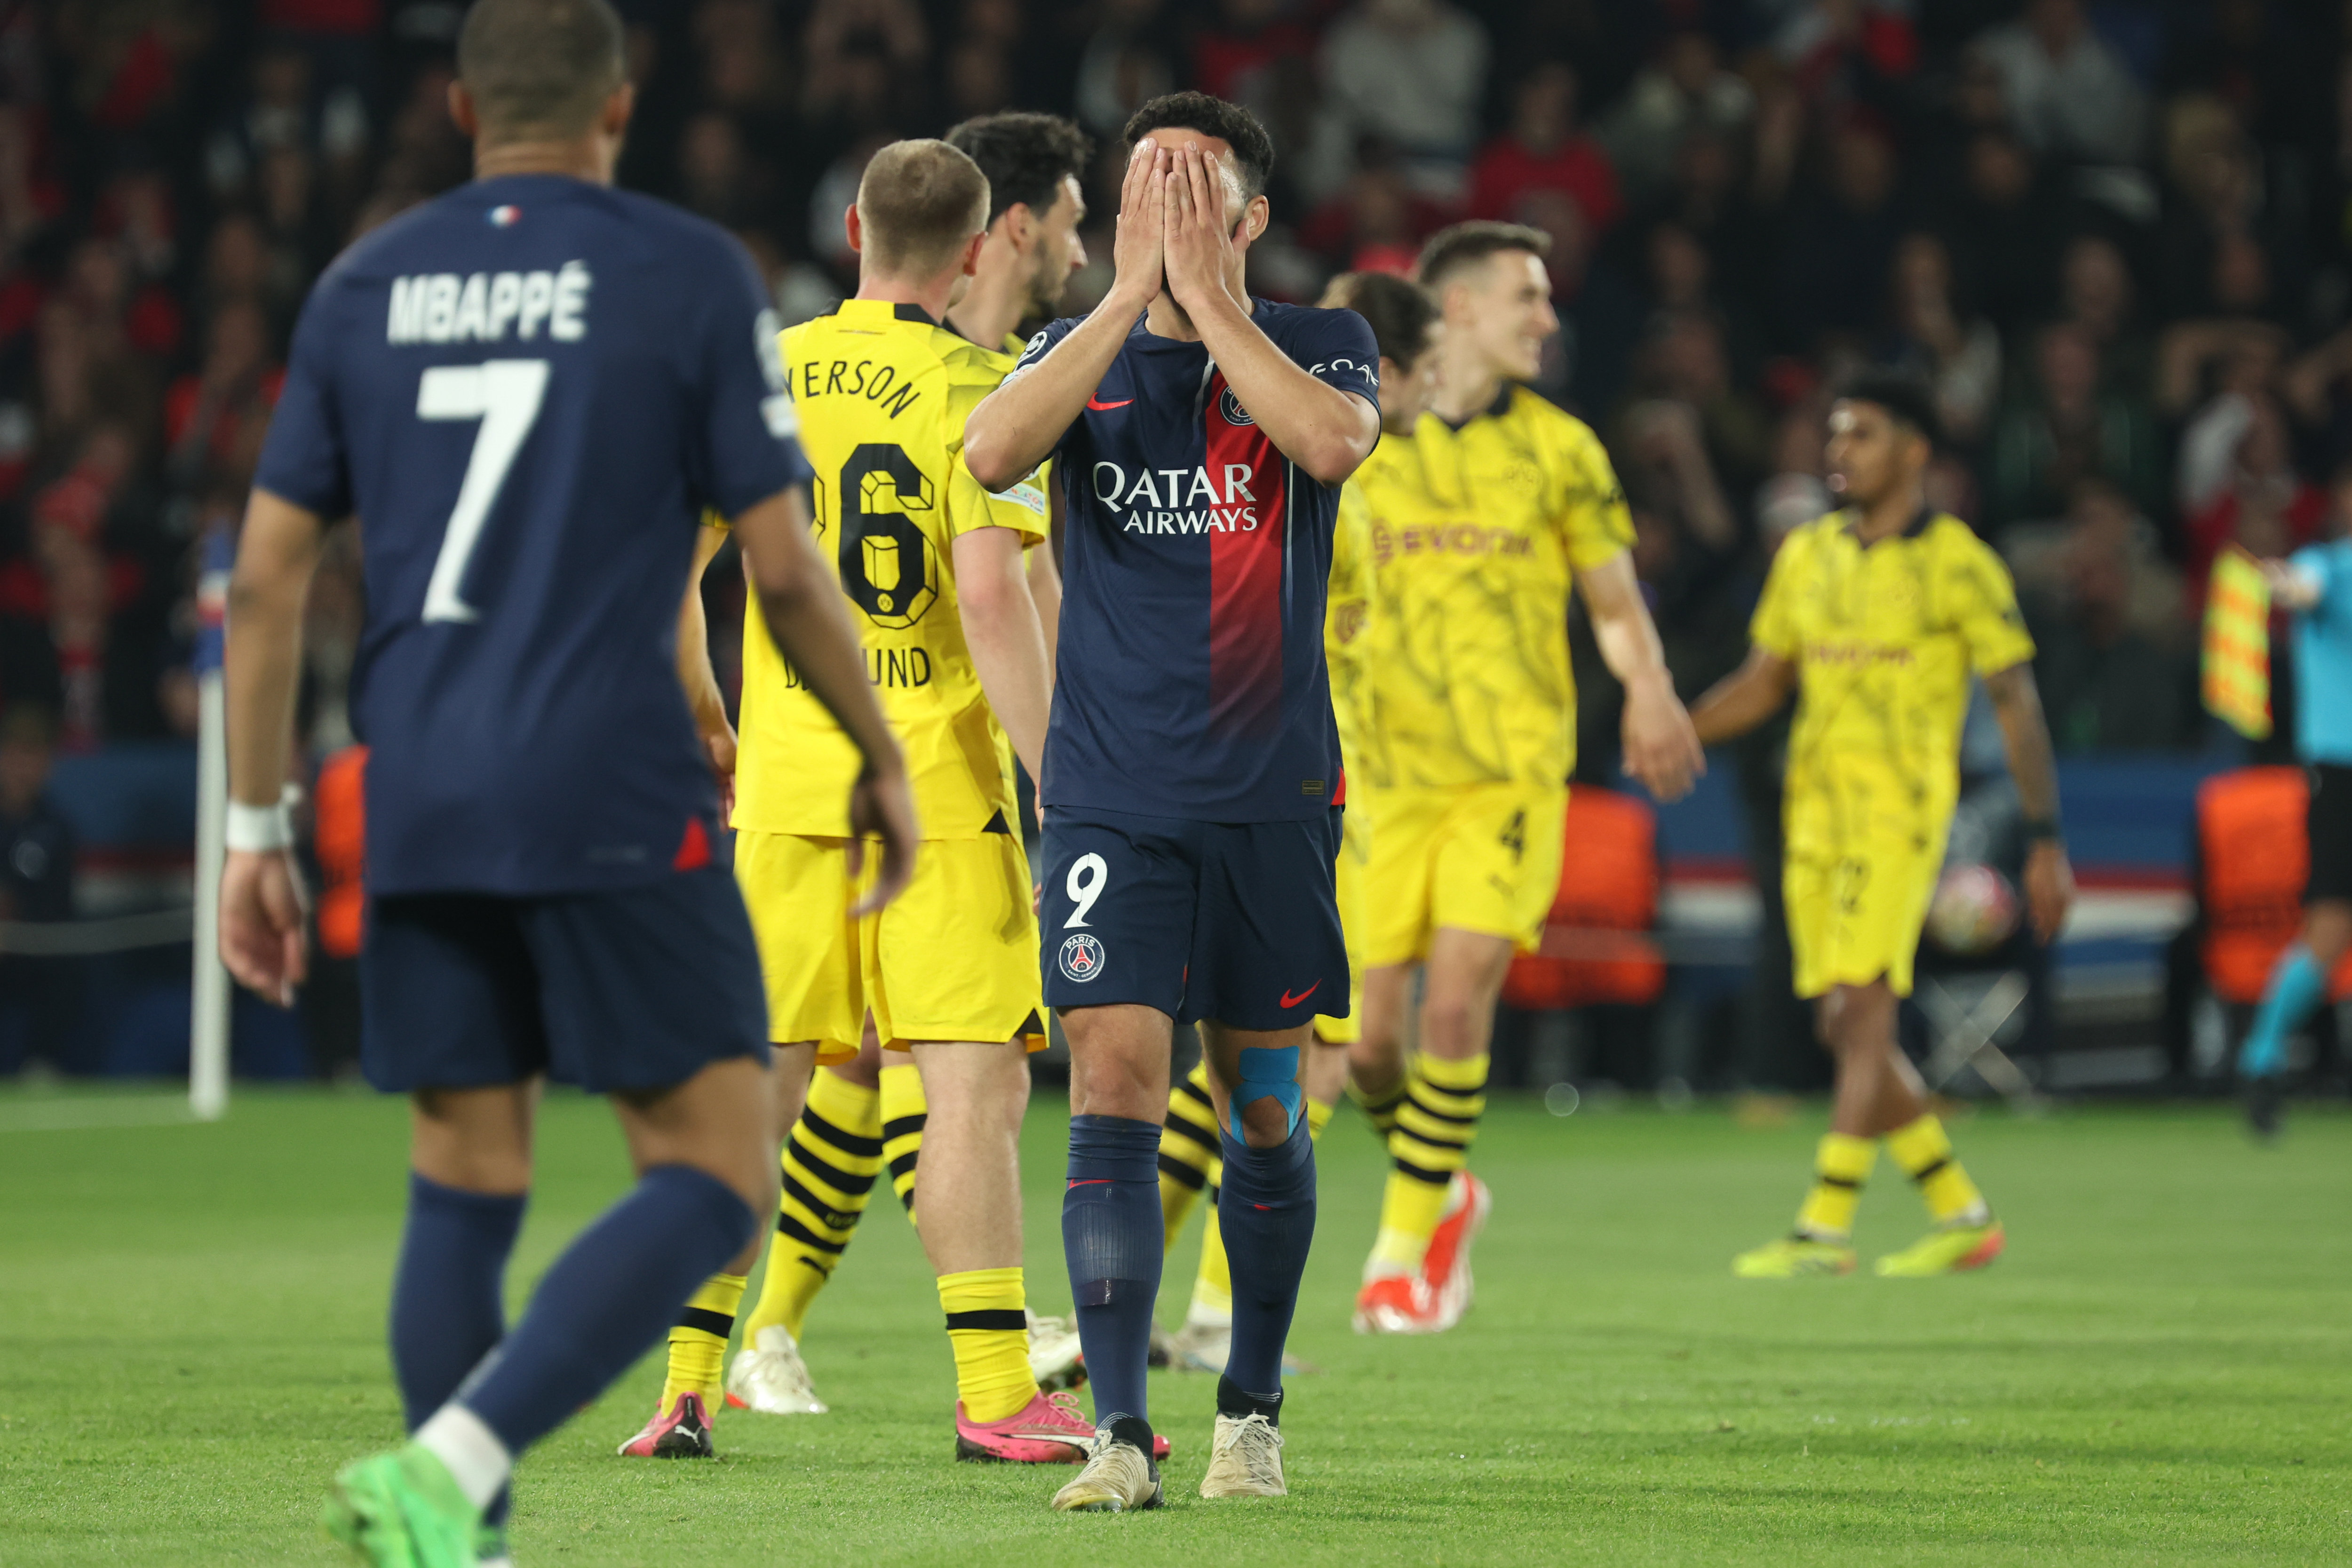 Le Paris Saint-Germain a été éliminé par Dortmund en demi-finale de la Ligue des champions, ce mardi au Parc des Princes. LP/Arnaud Journois